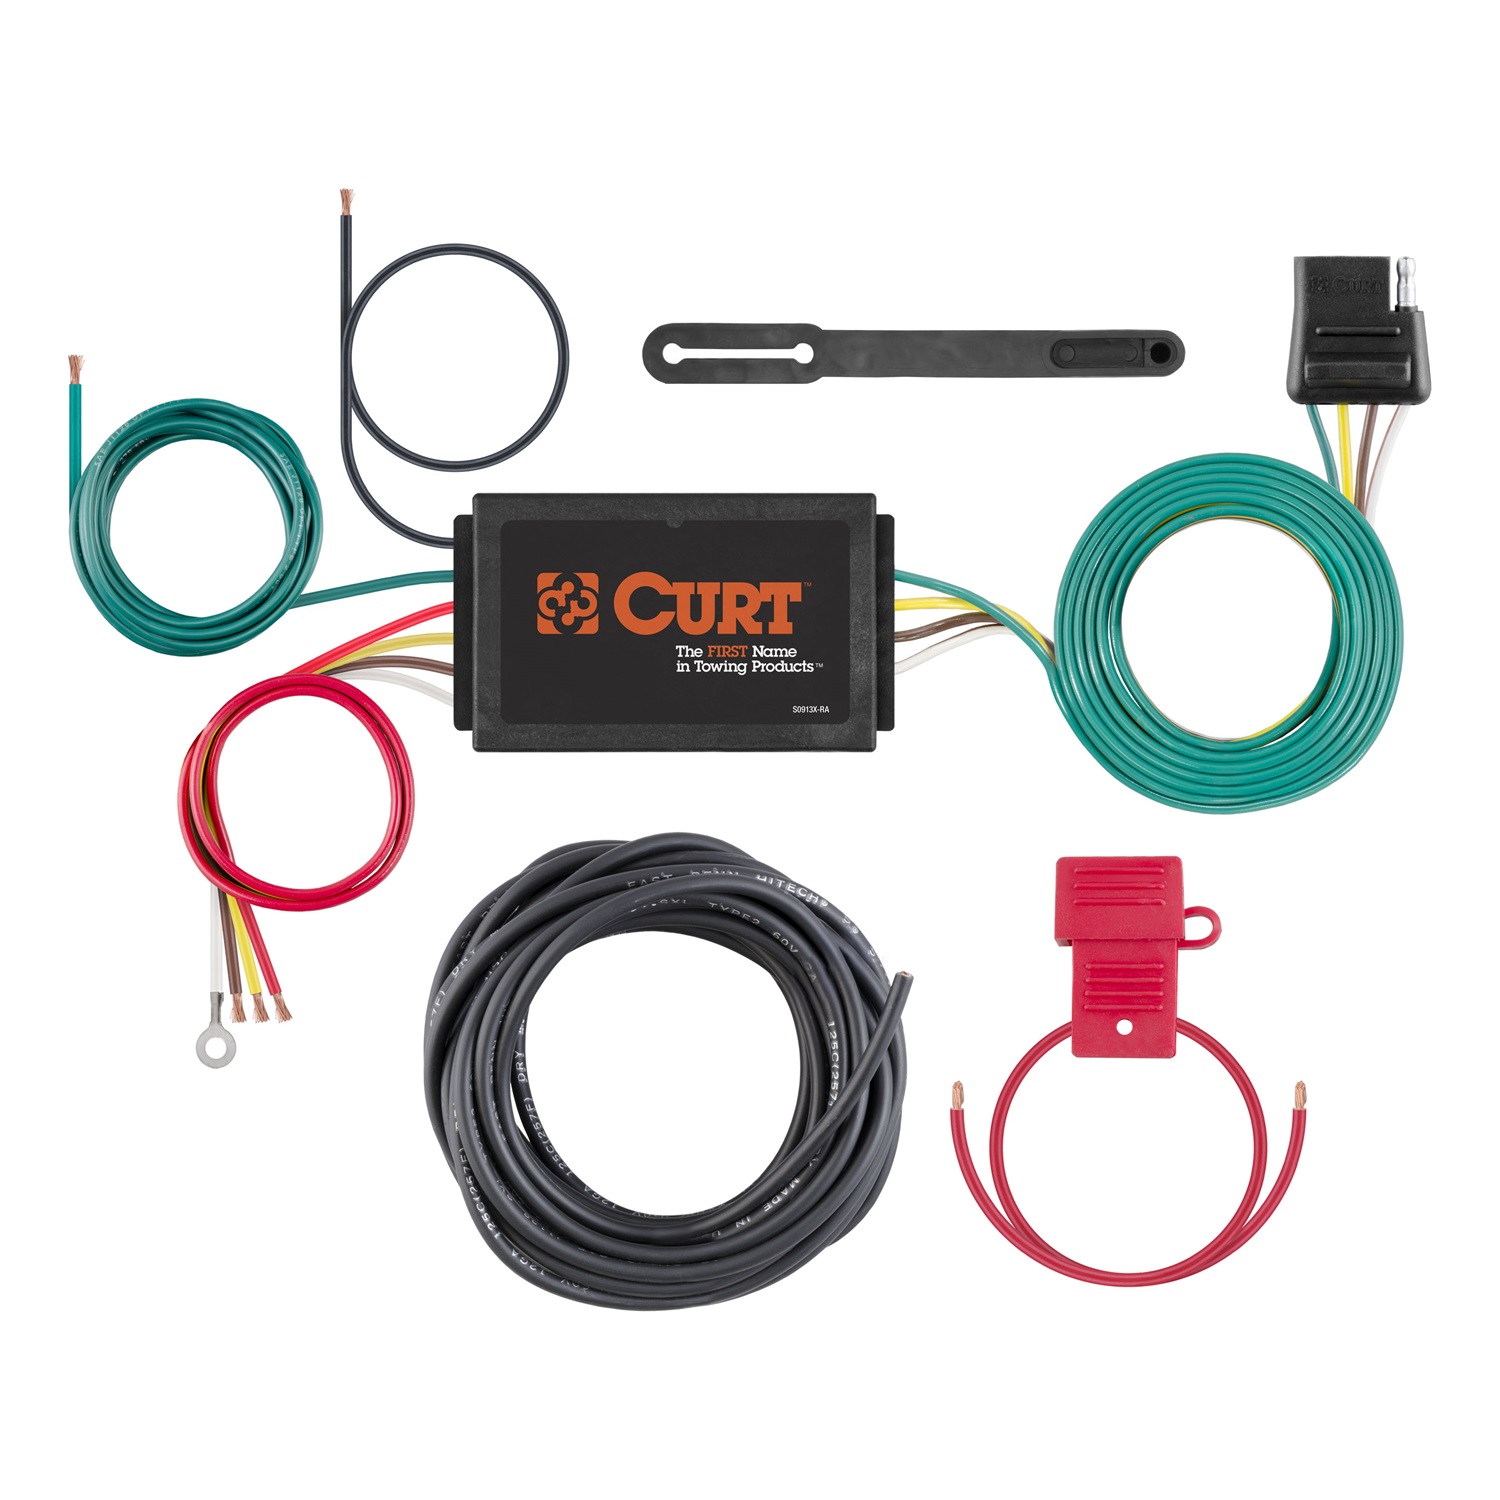 CURT Manufacturing CURT Manufacturing 59146 Wiring Kit